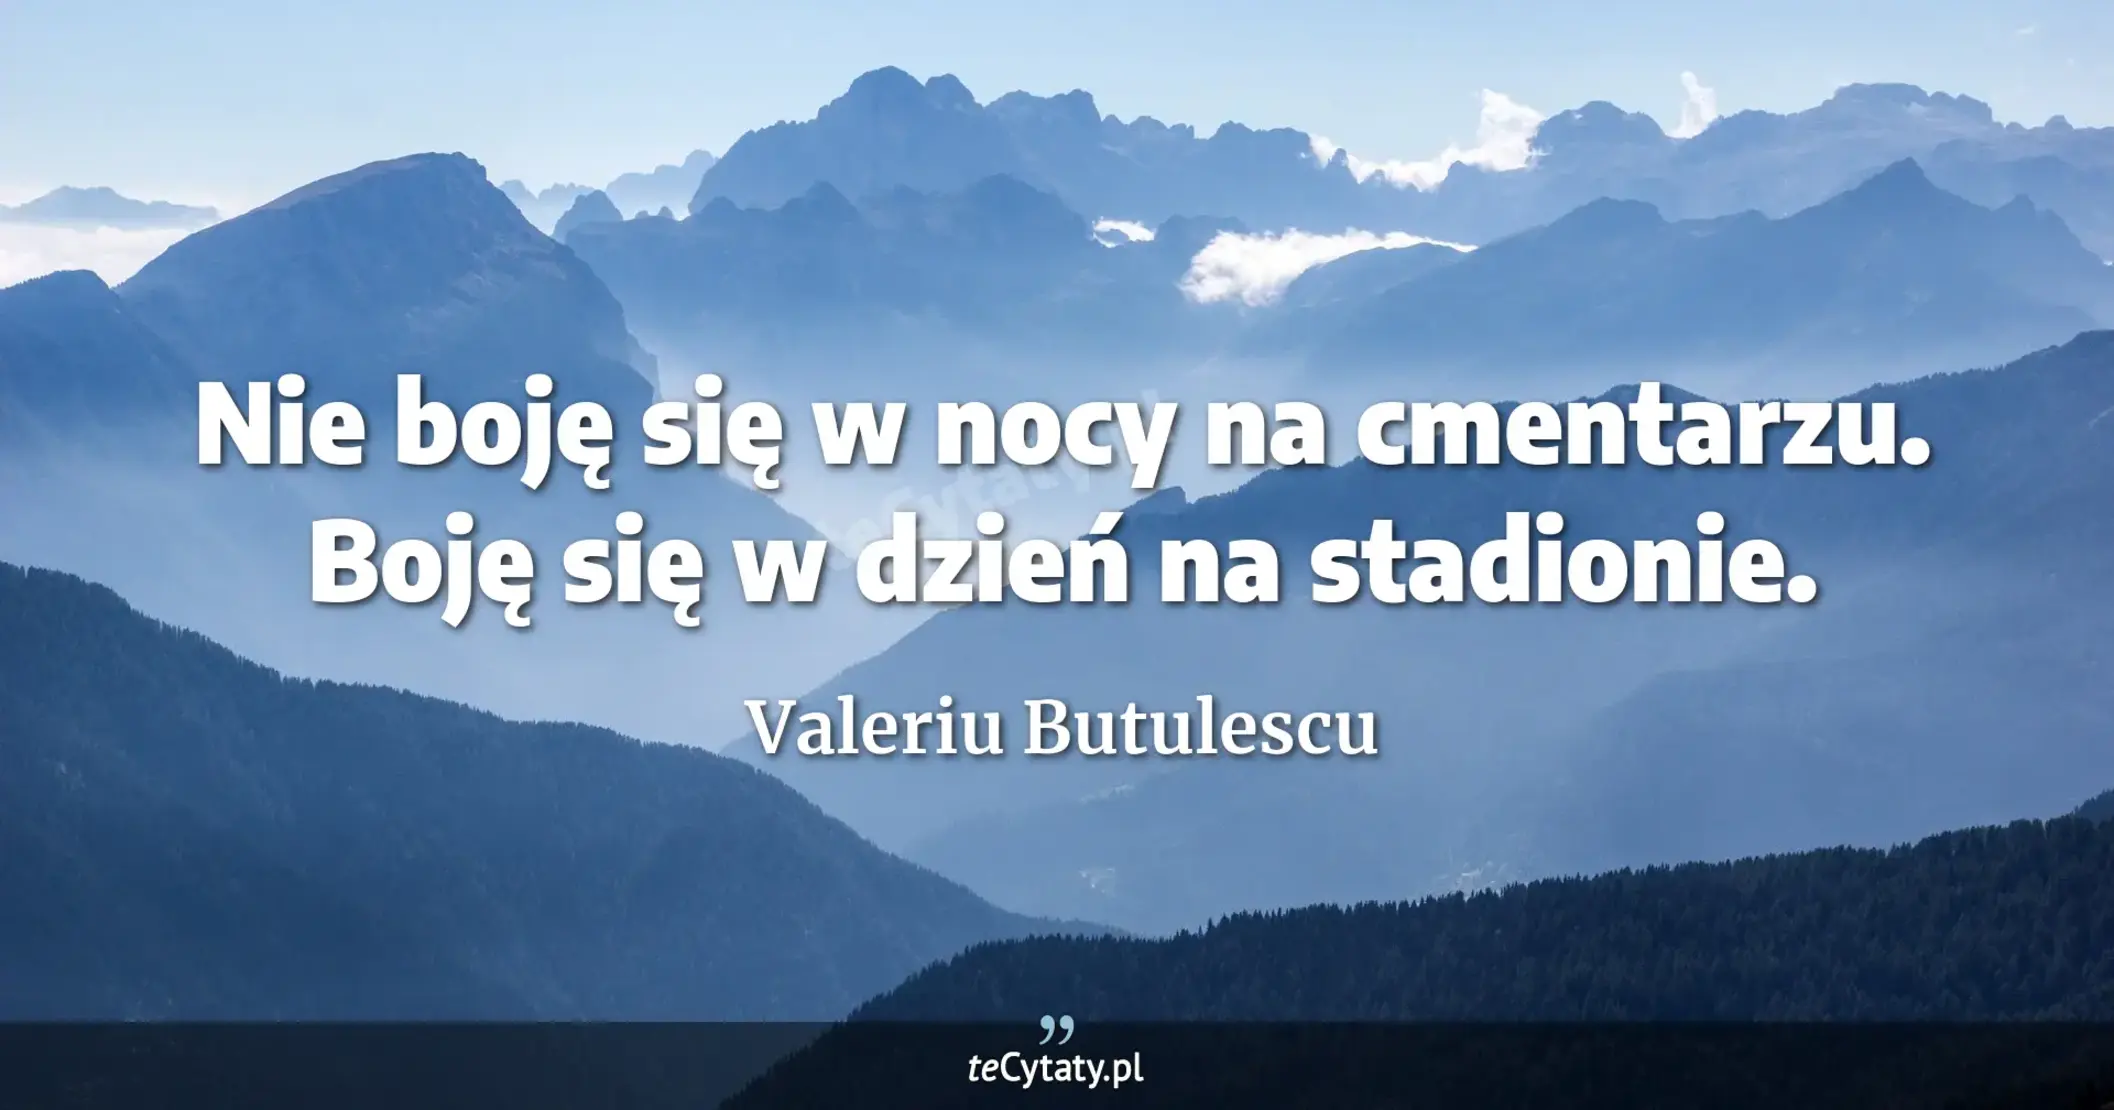 Nie boję się w nocy na cmentarzu. Boję się w dzień na stadionie. - Valeriu Butulescu